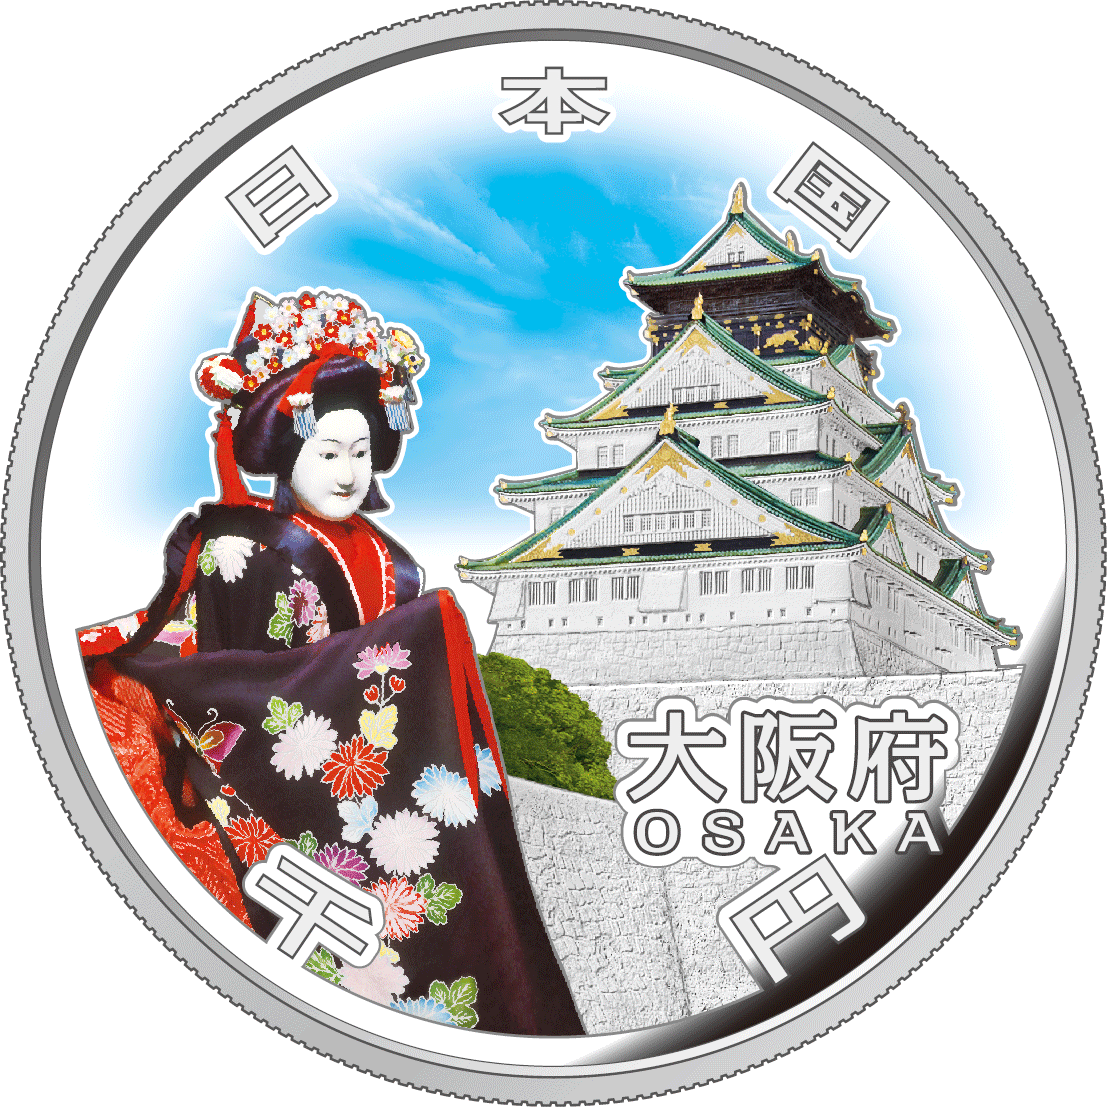 Image of Osaka design of 1,000 yen